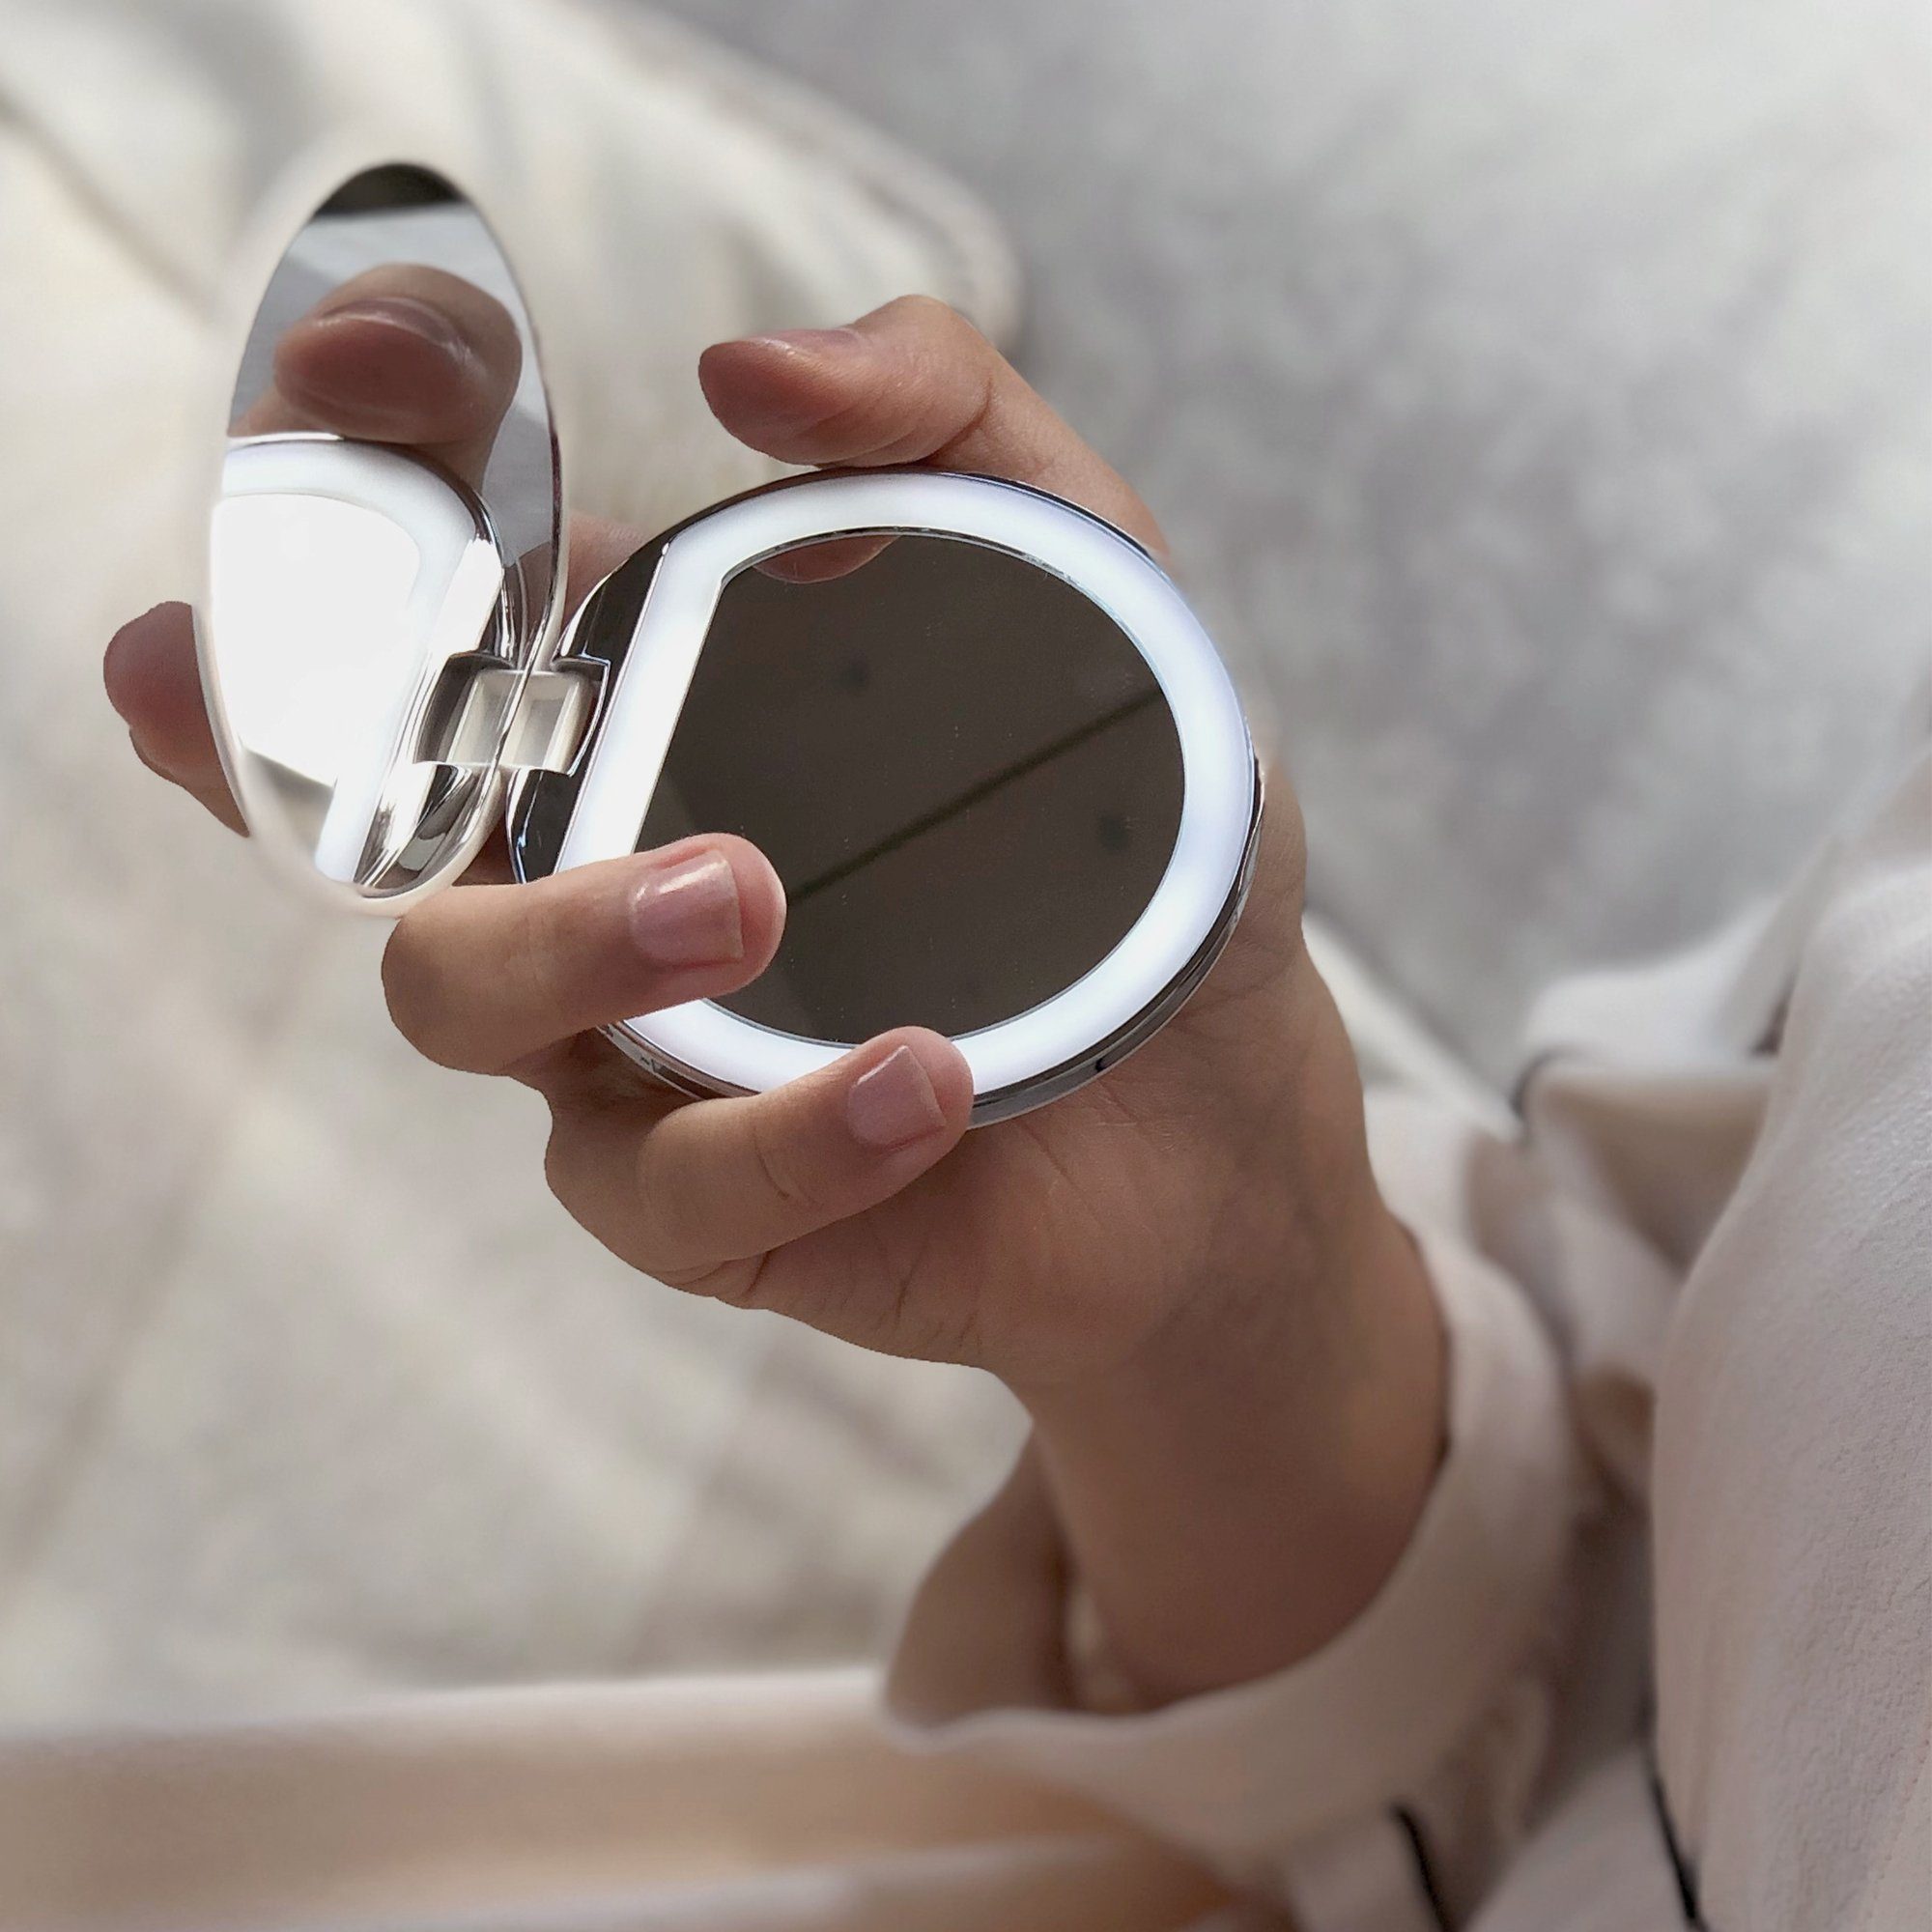 Kosmetikspiegel | MAQUILLAGE, weiß Taschenspiegel AILORIA mit LED-Beleuchtung weiß (USB)